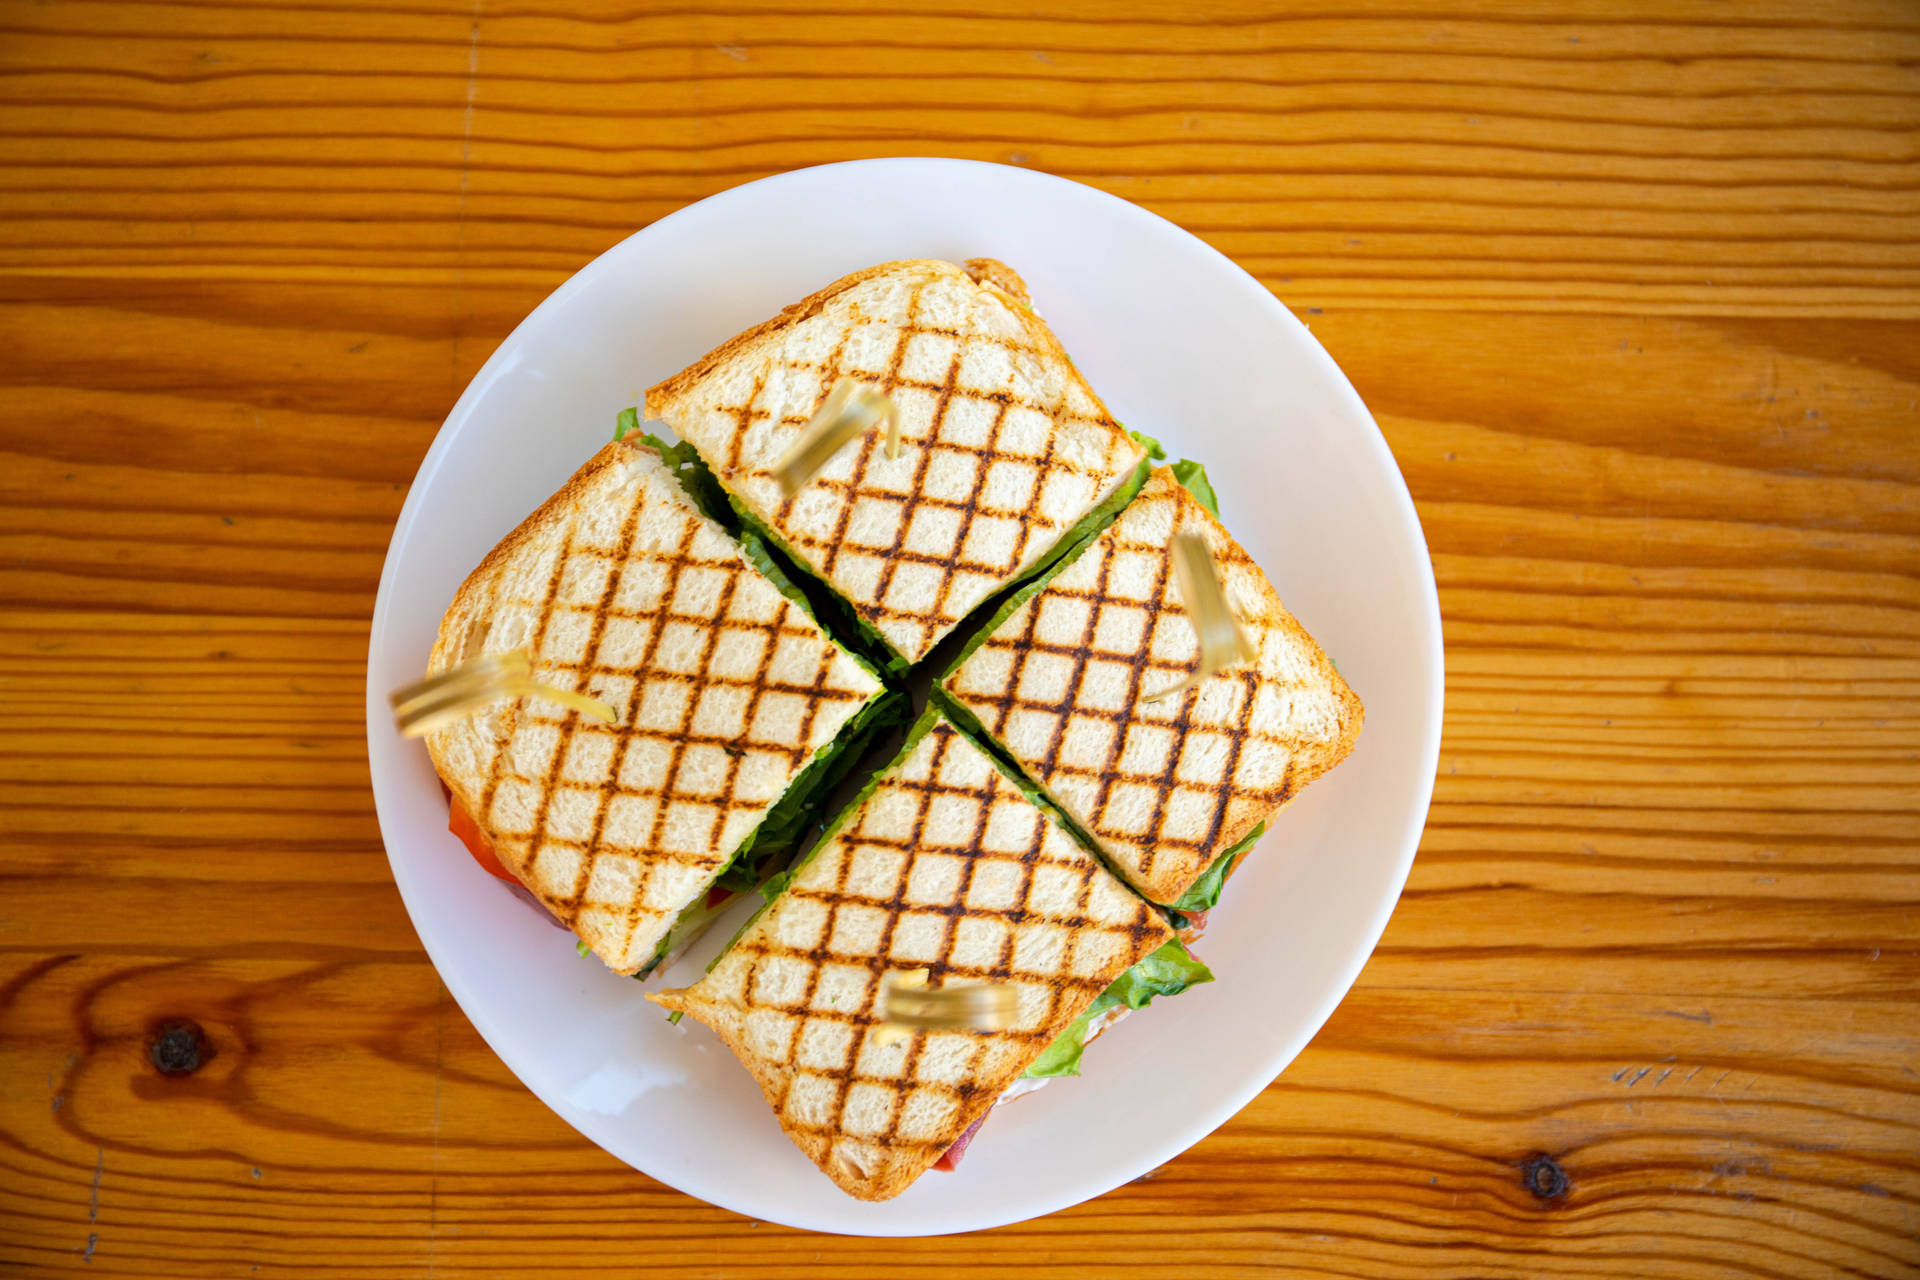 Sliced Sandwich 2560x1440 Food Wallpaper